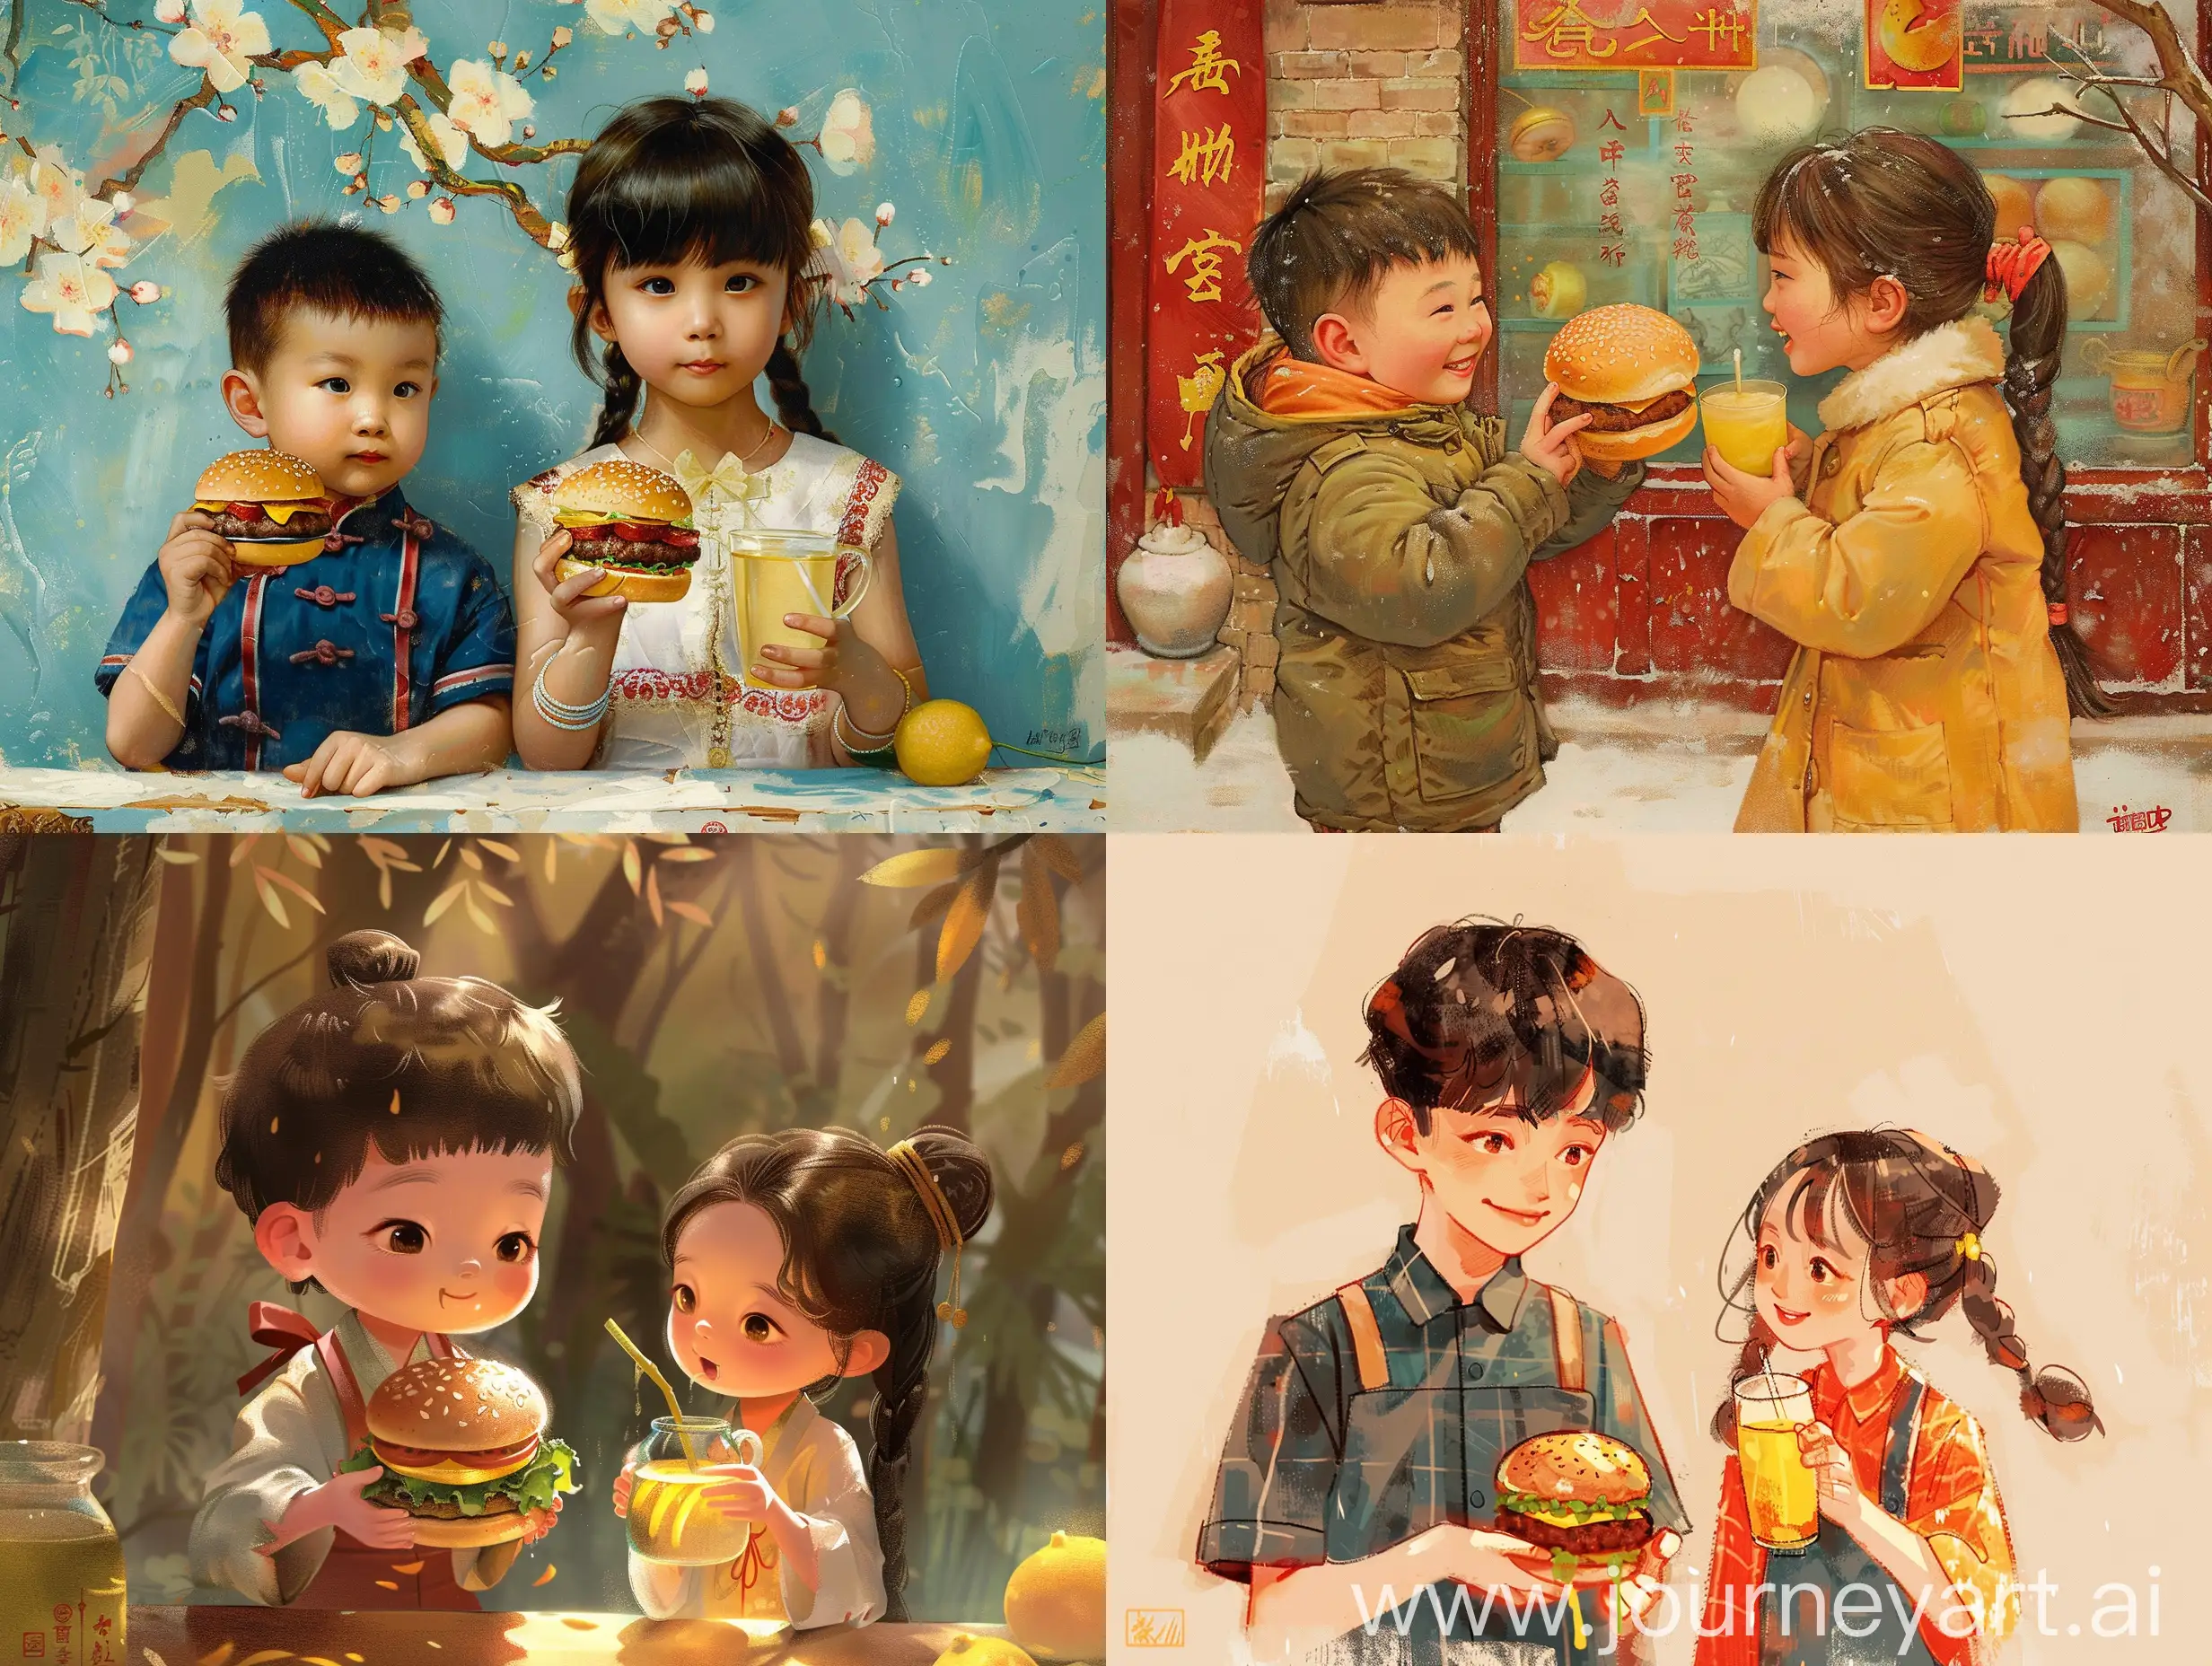 一个拿着汉堡的中国男孩与一个拿着饮料柠檬茶的女孩牵手